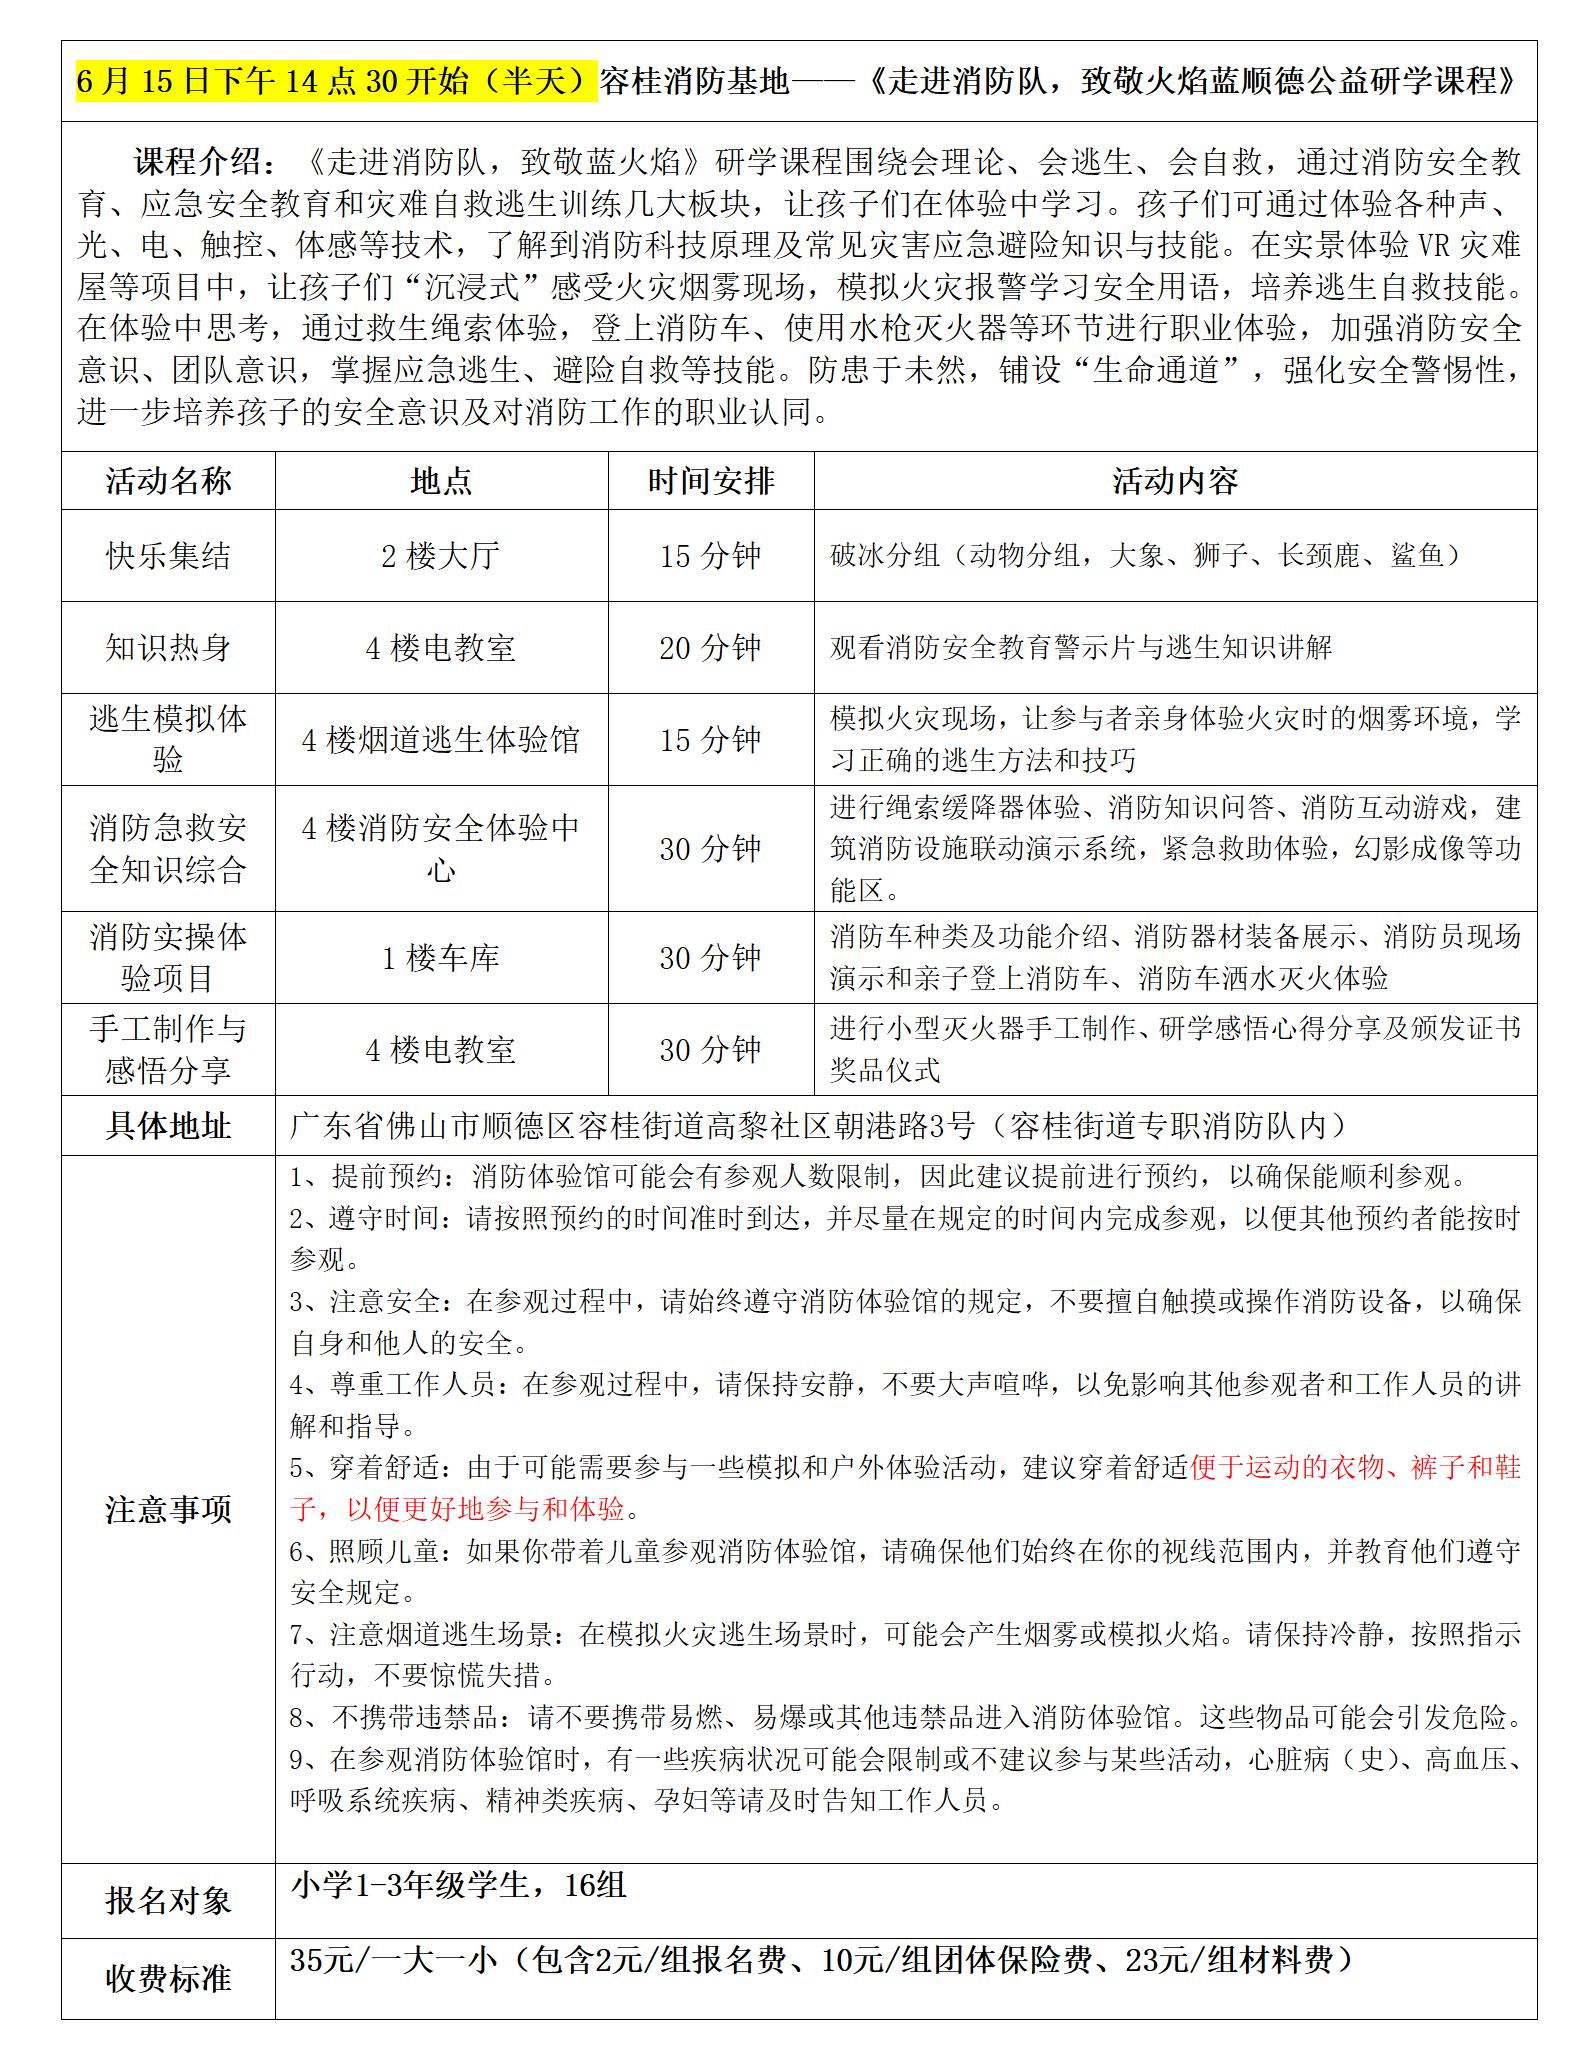 1-3年级容桂消防基地研学具体安排表(1)_01.jpg